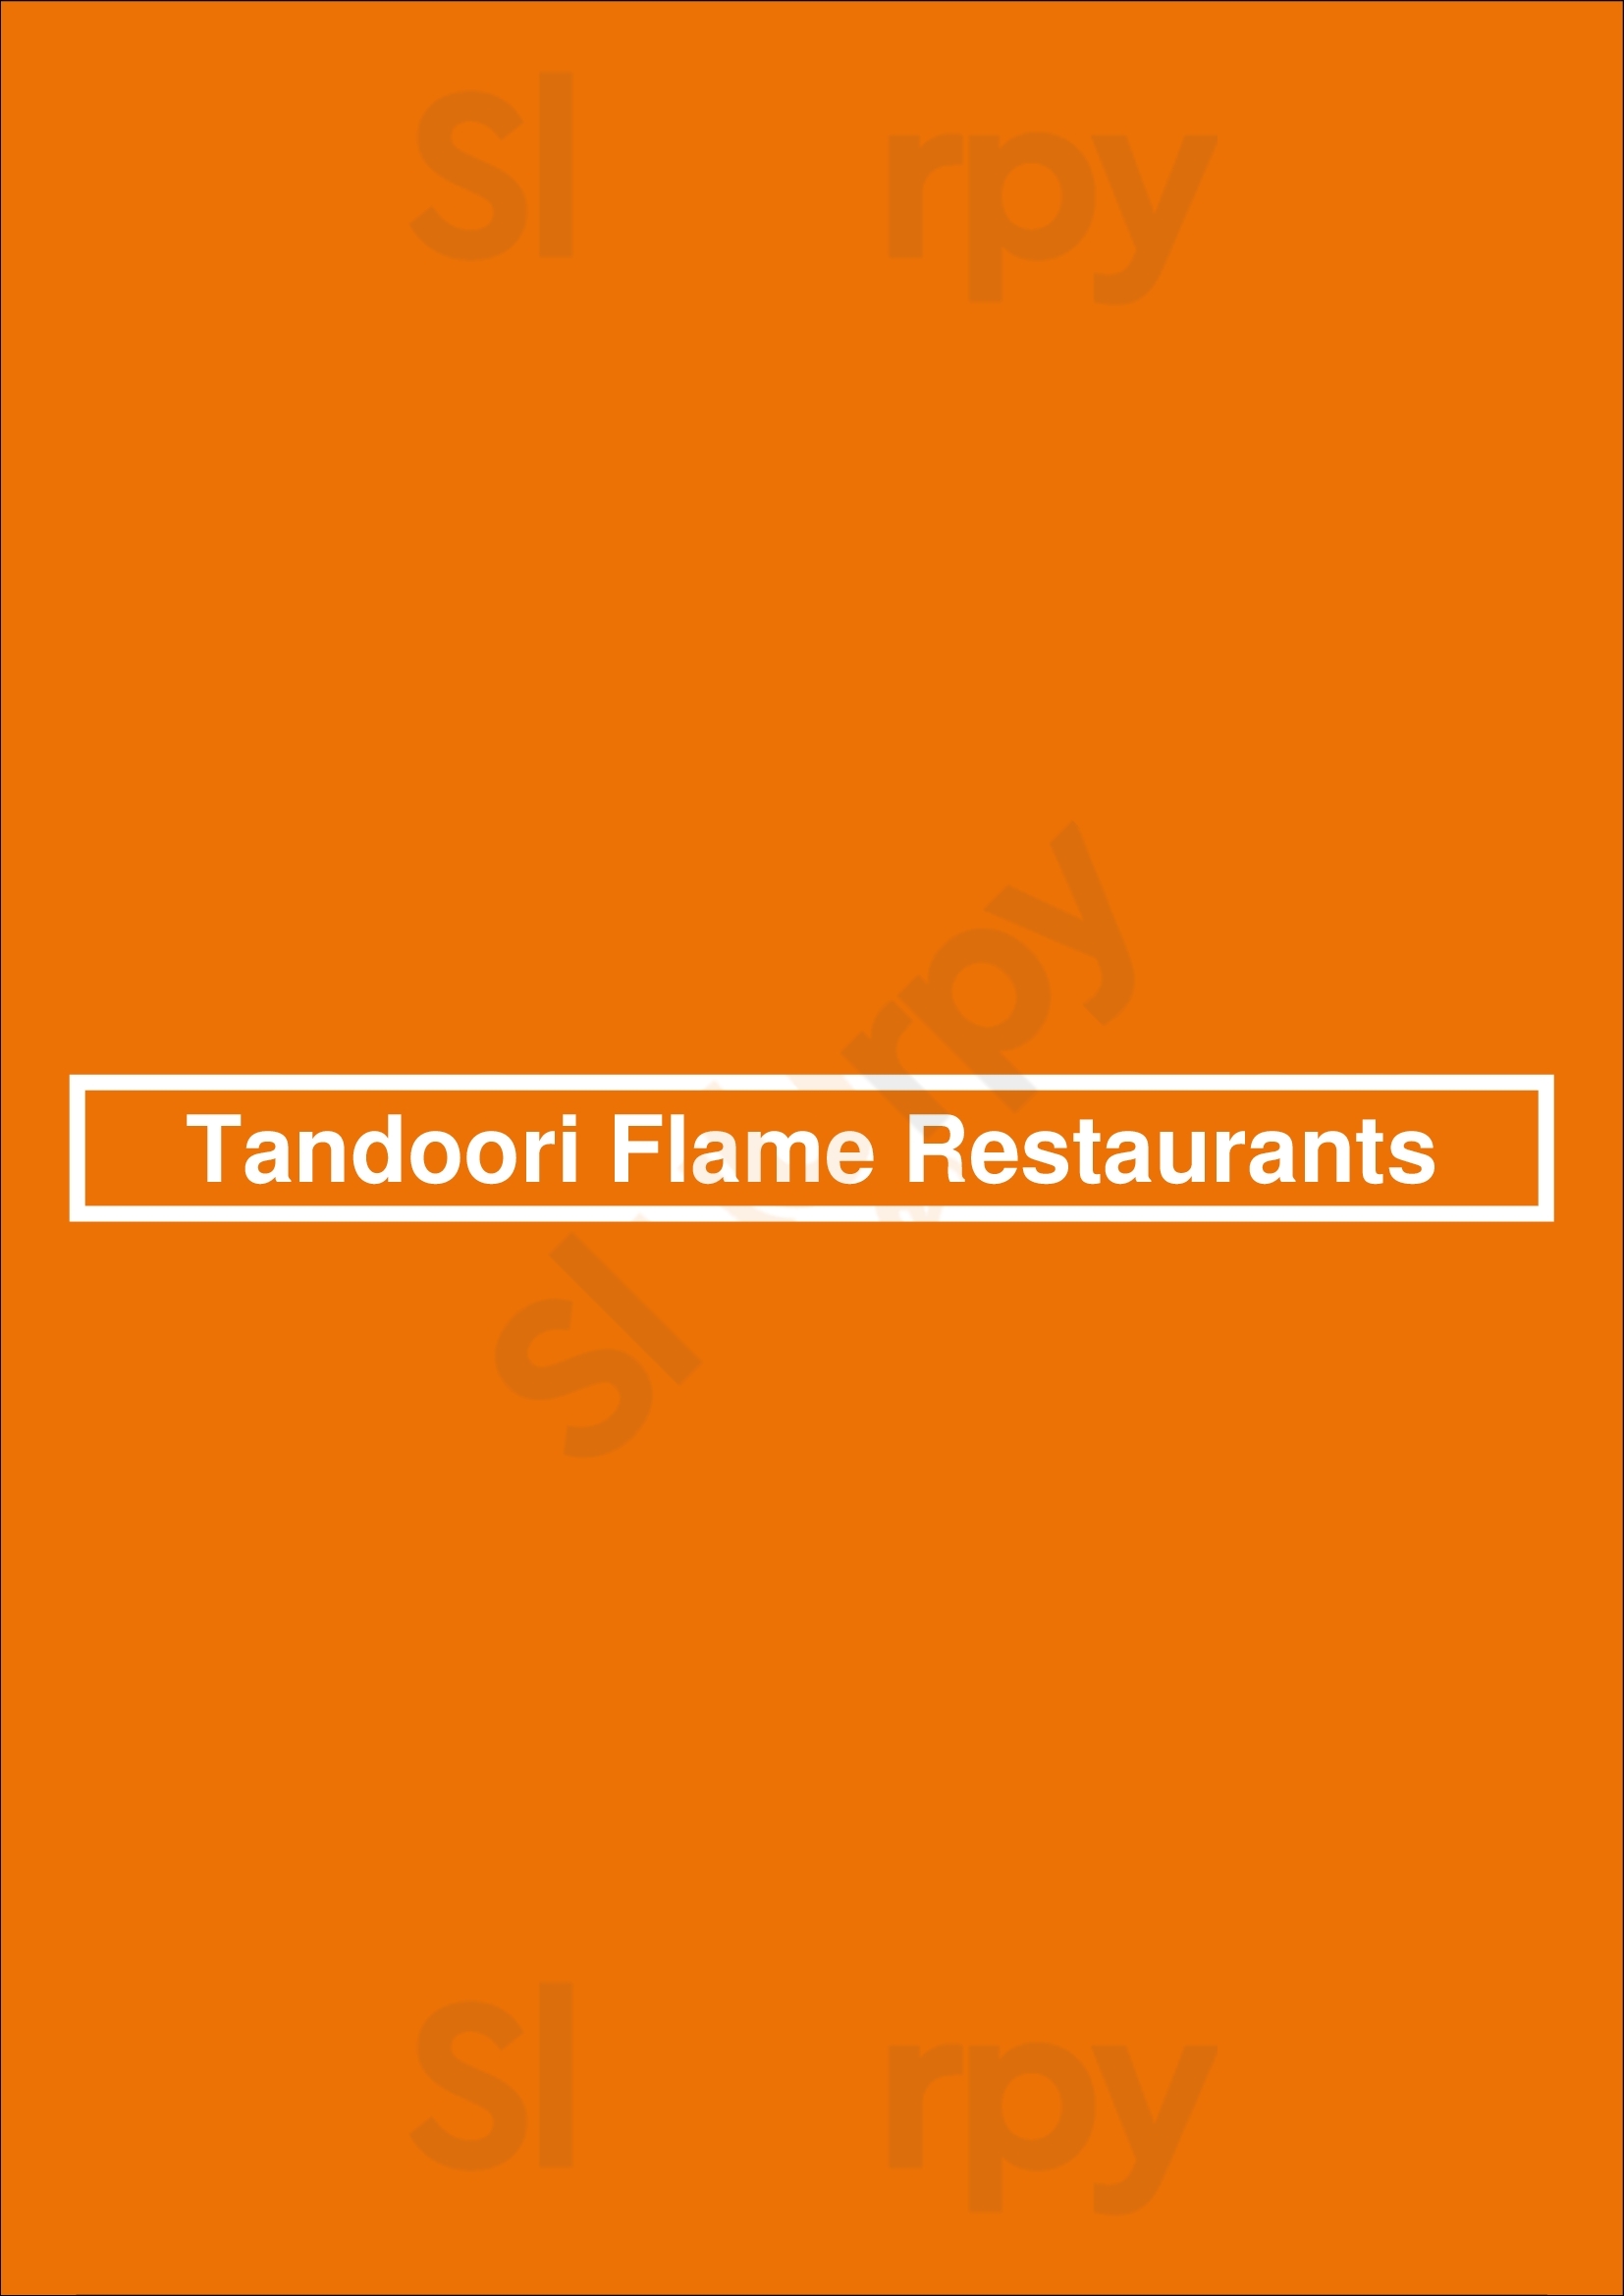 Tandoori Flame Restaurants Delta Menu - 1